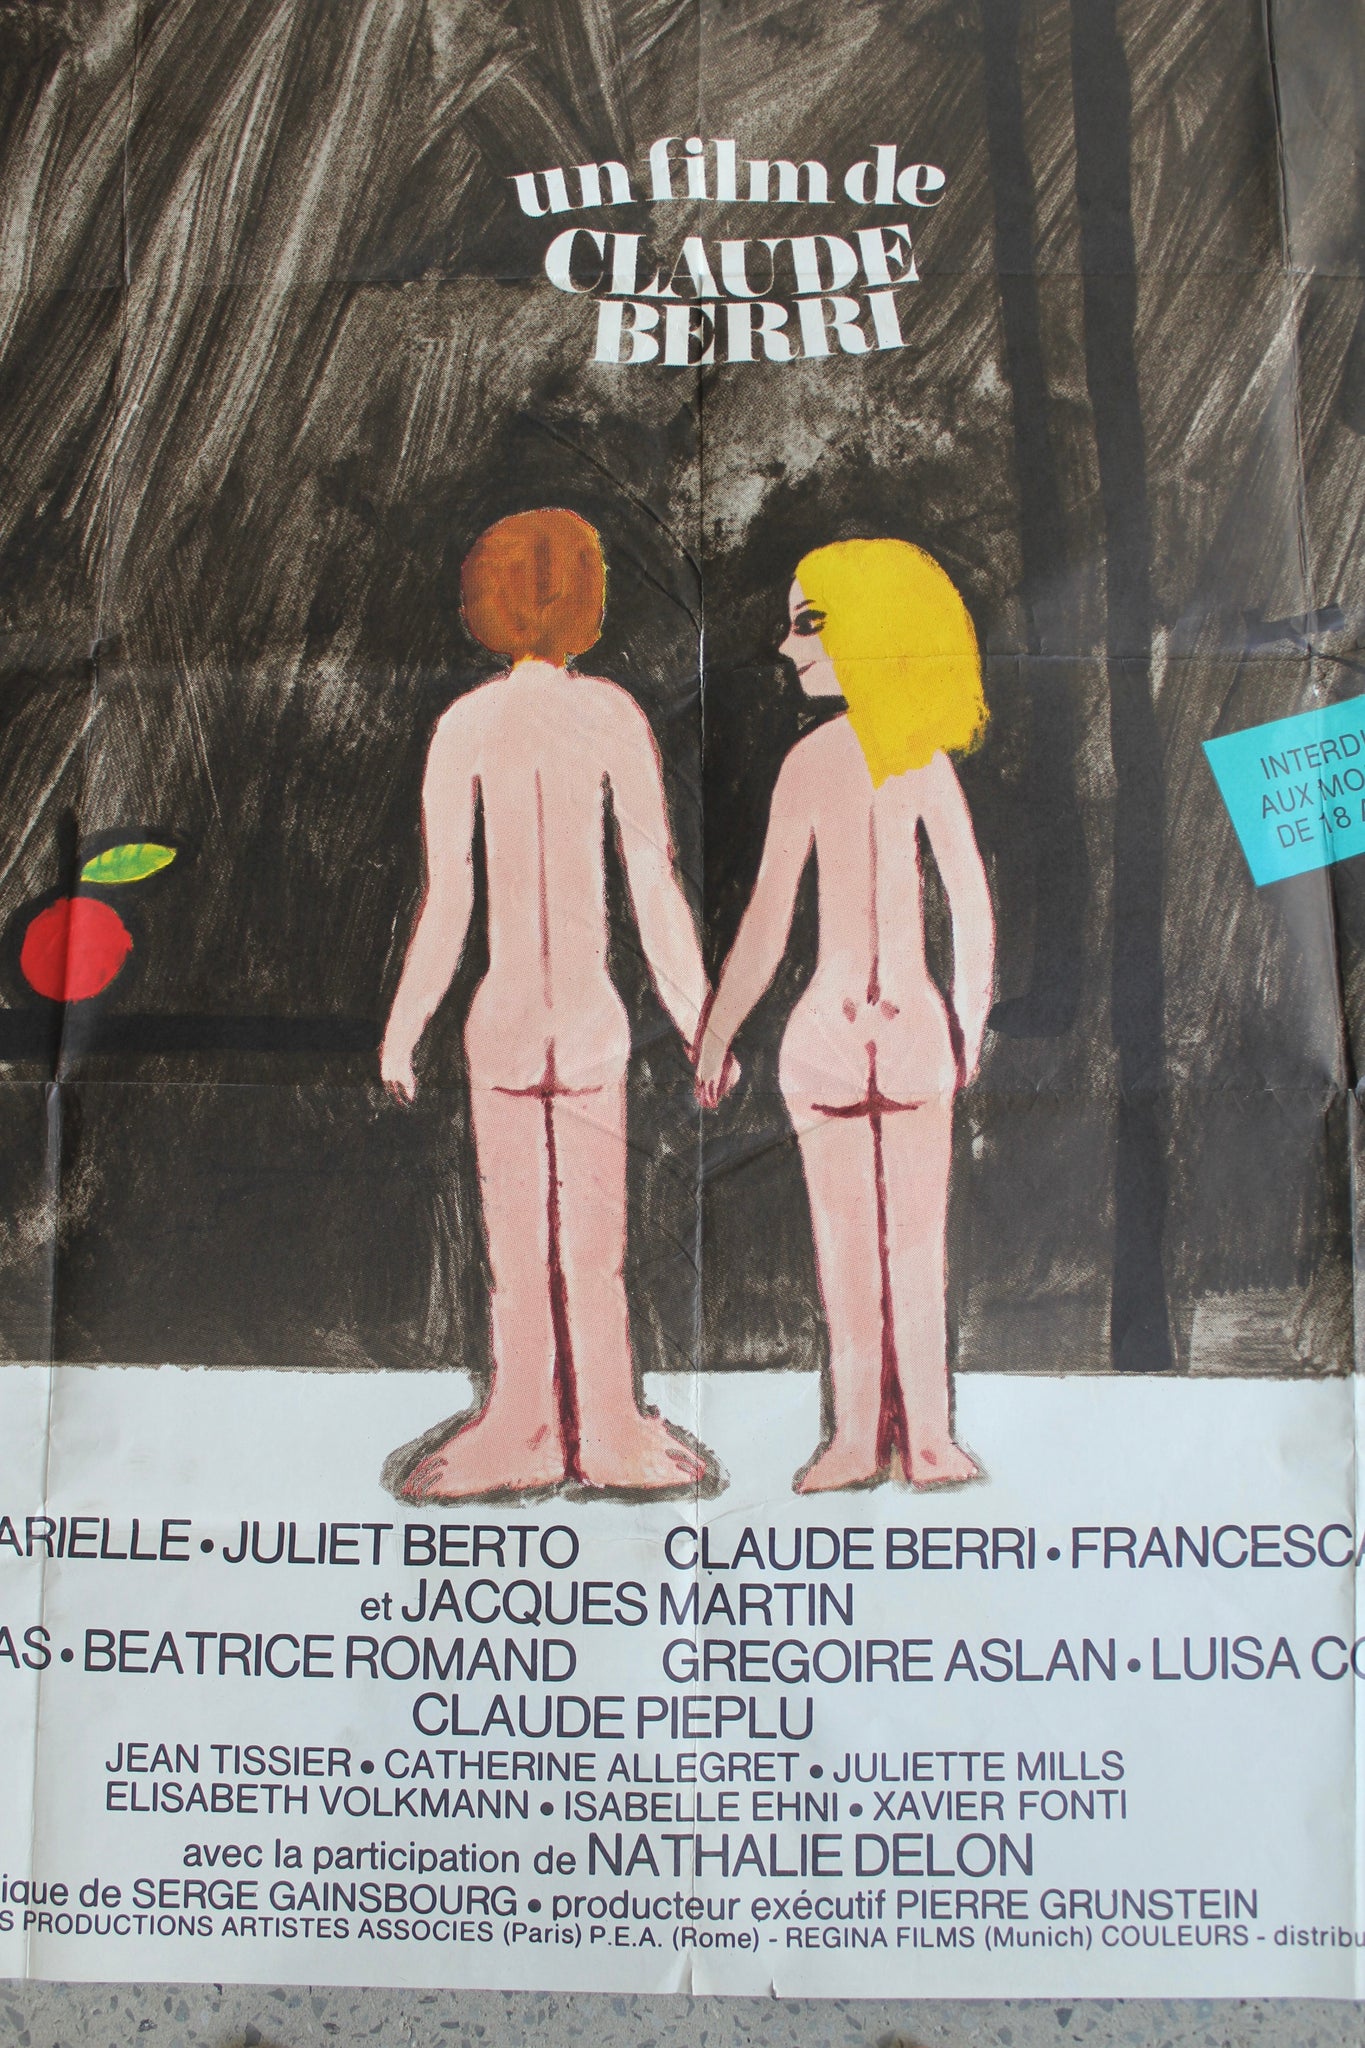 Le Sex Shop - Vintage Movie Poster